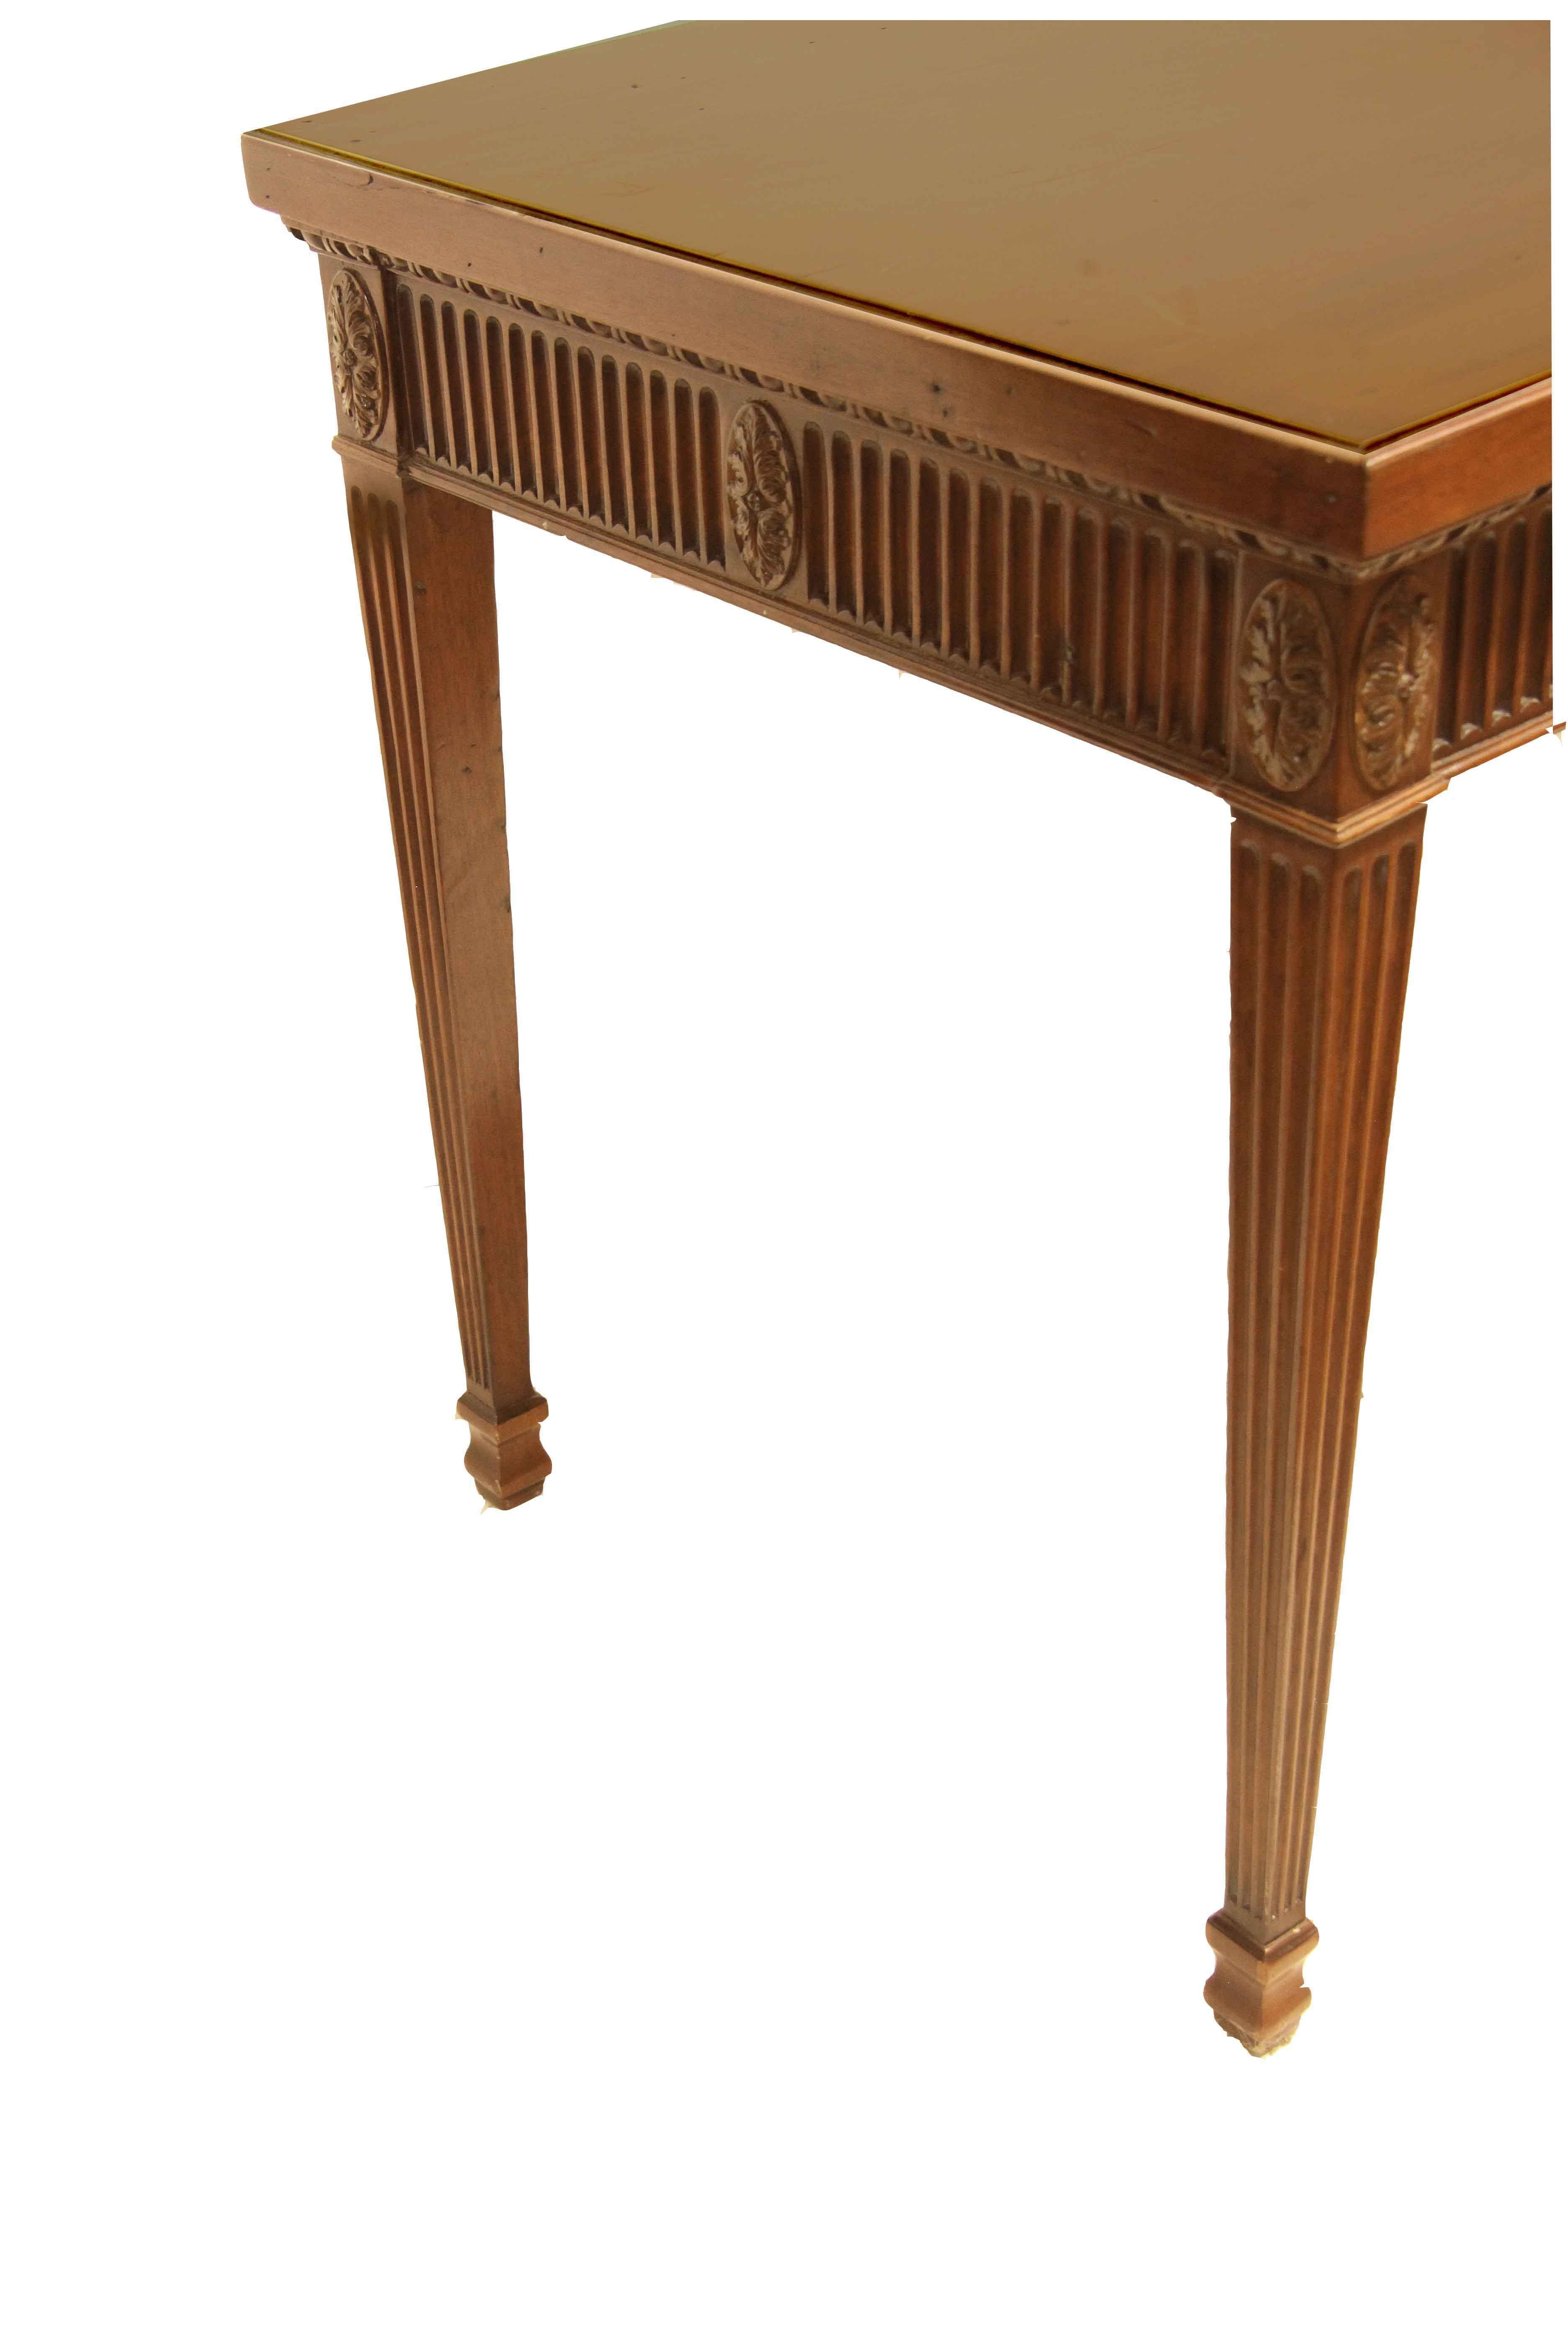 Consolle inglese Hepplewhite, questo tavolo è dell'epoca, datato circa 1800, il piano è stato ovviamente selezionato per le sue favolose venature e la sua notevole larghezza (il piano è un'unica tavola, larga oltre 28''). La parte superiore è